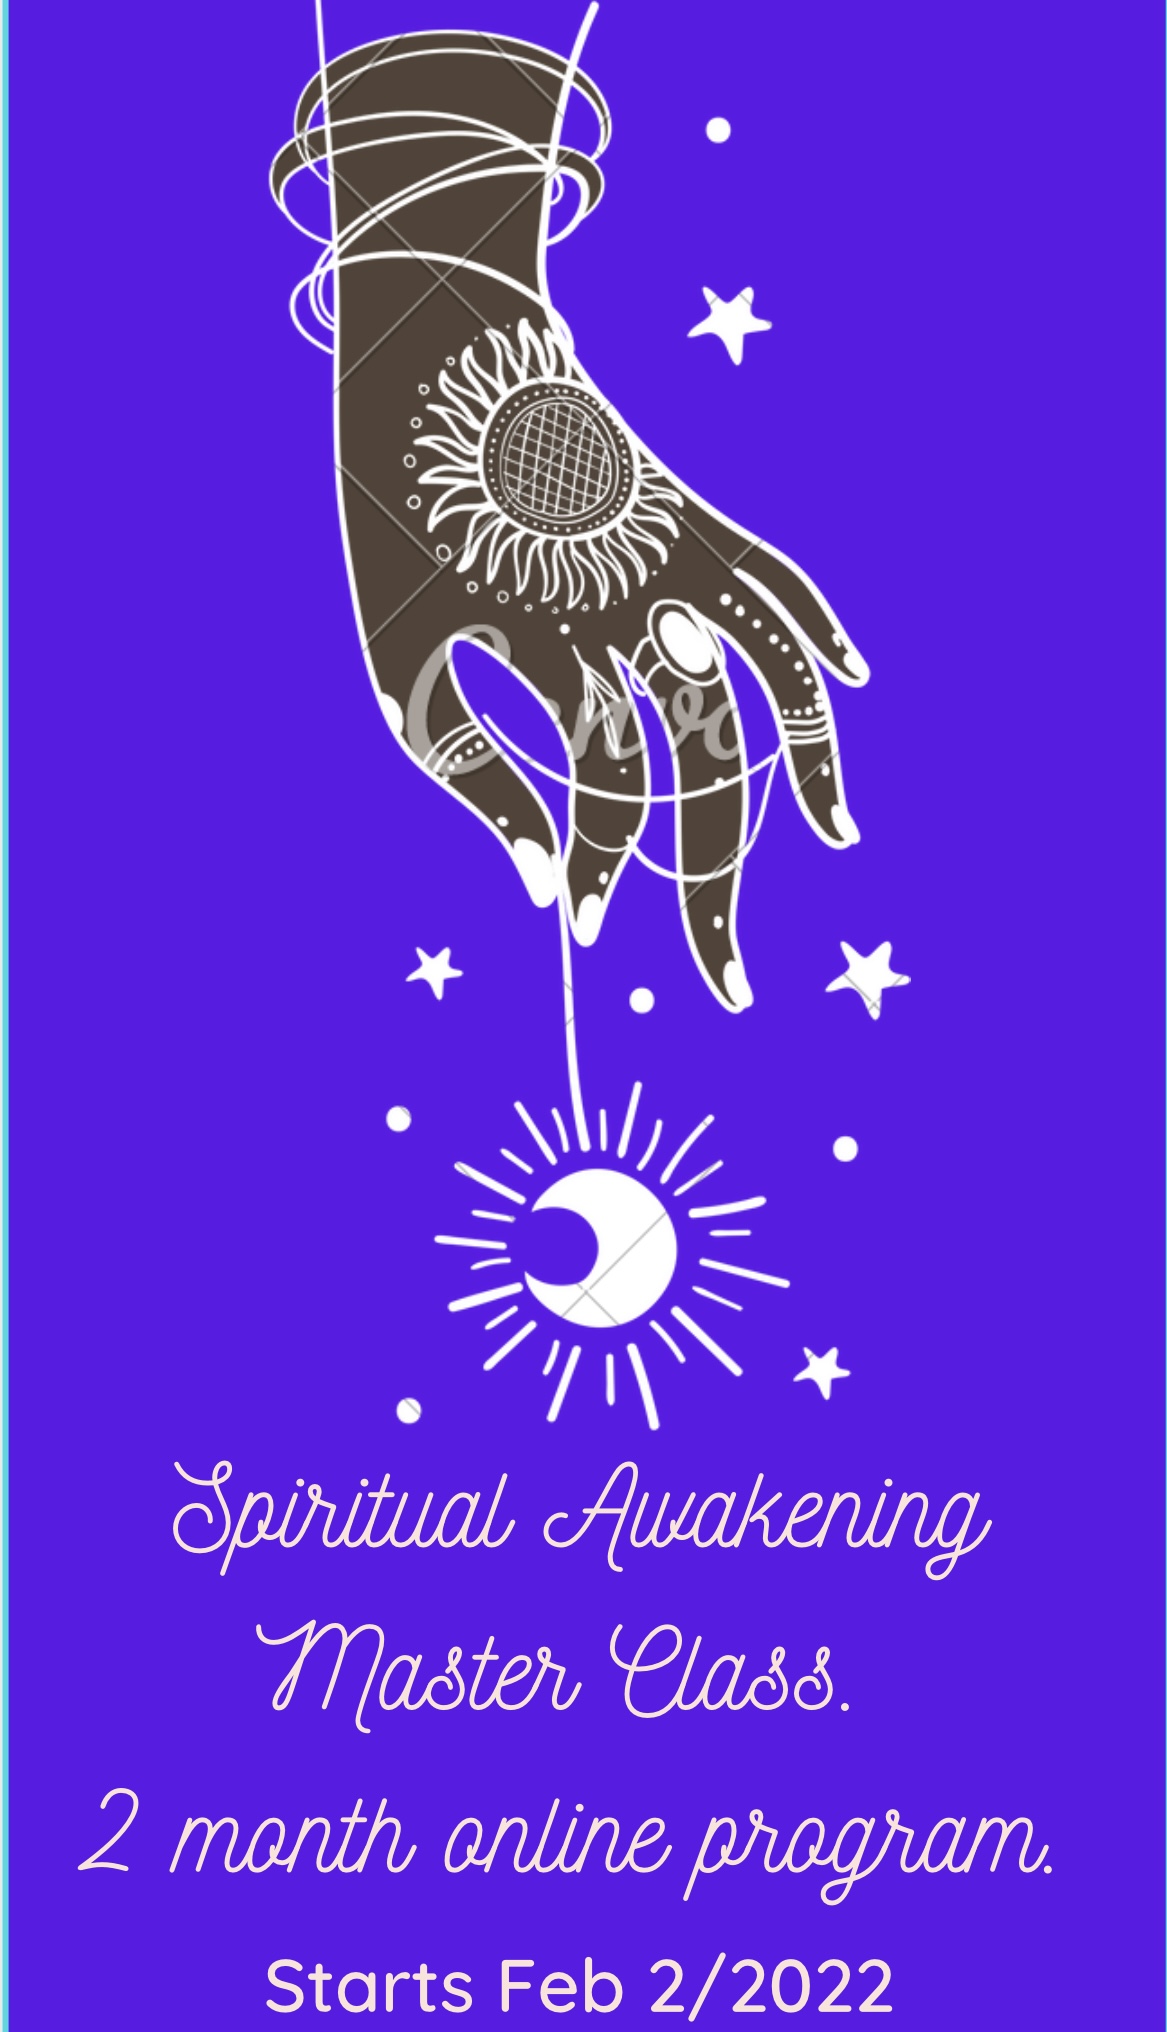 Spiritual Awakening Master Class – 2 month online program